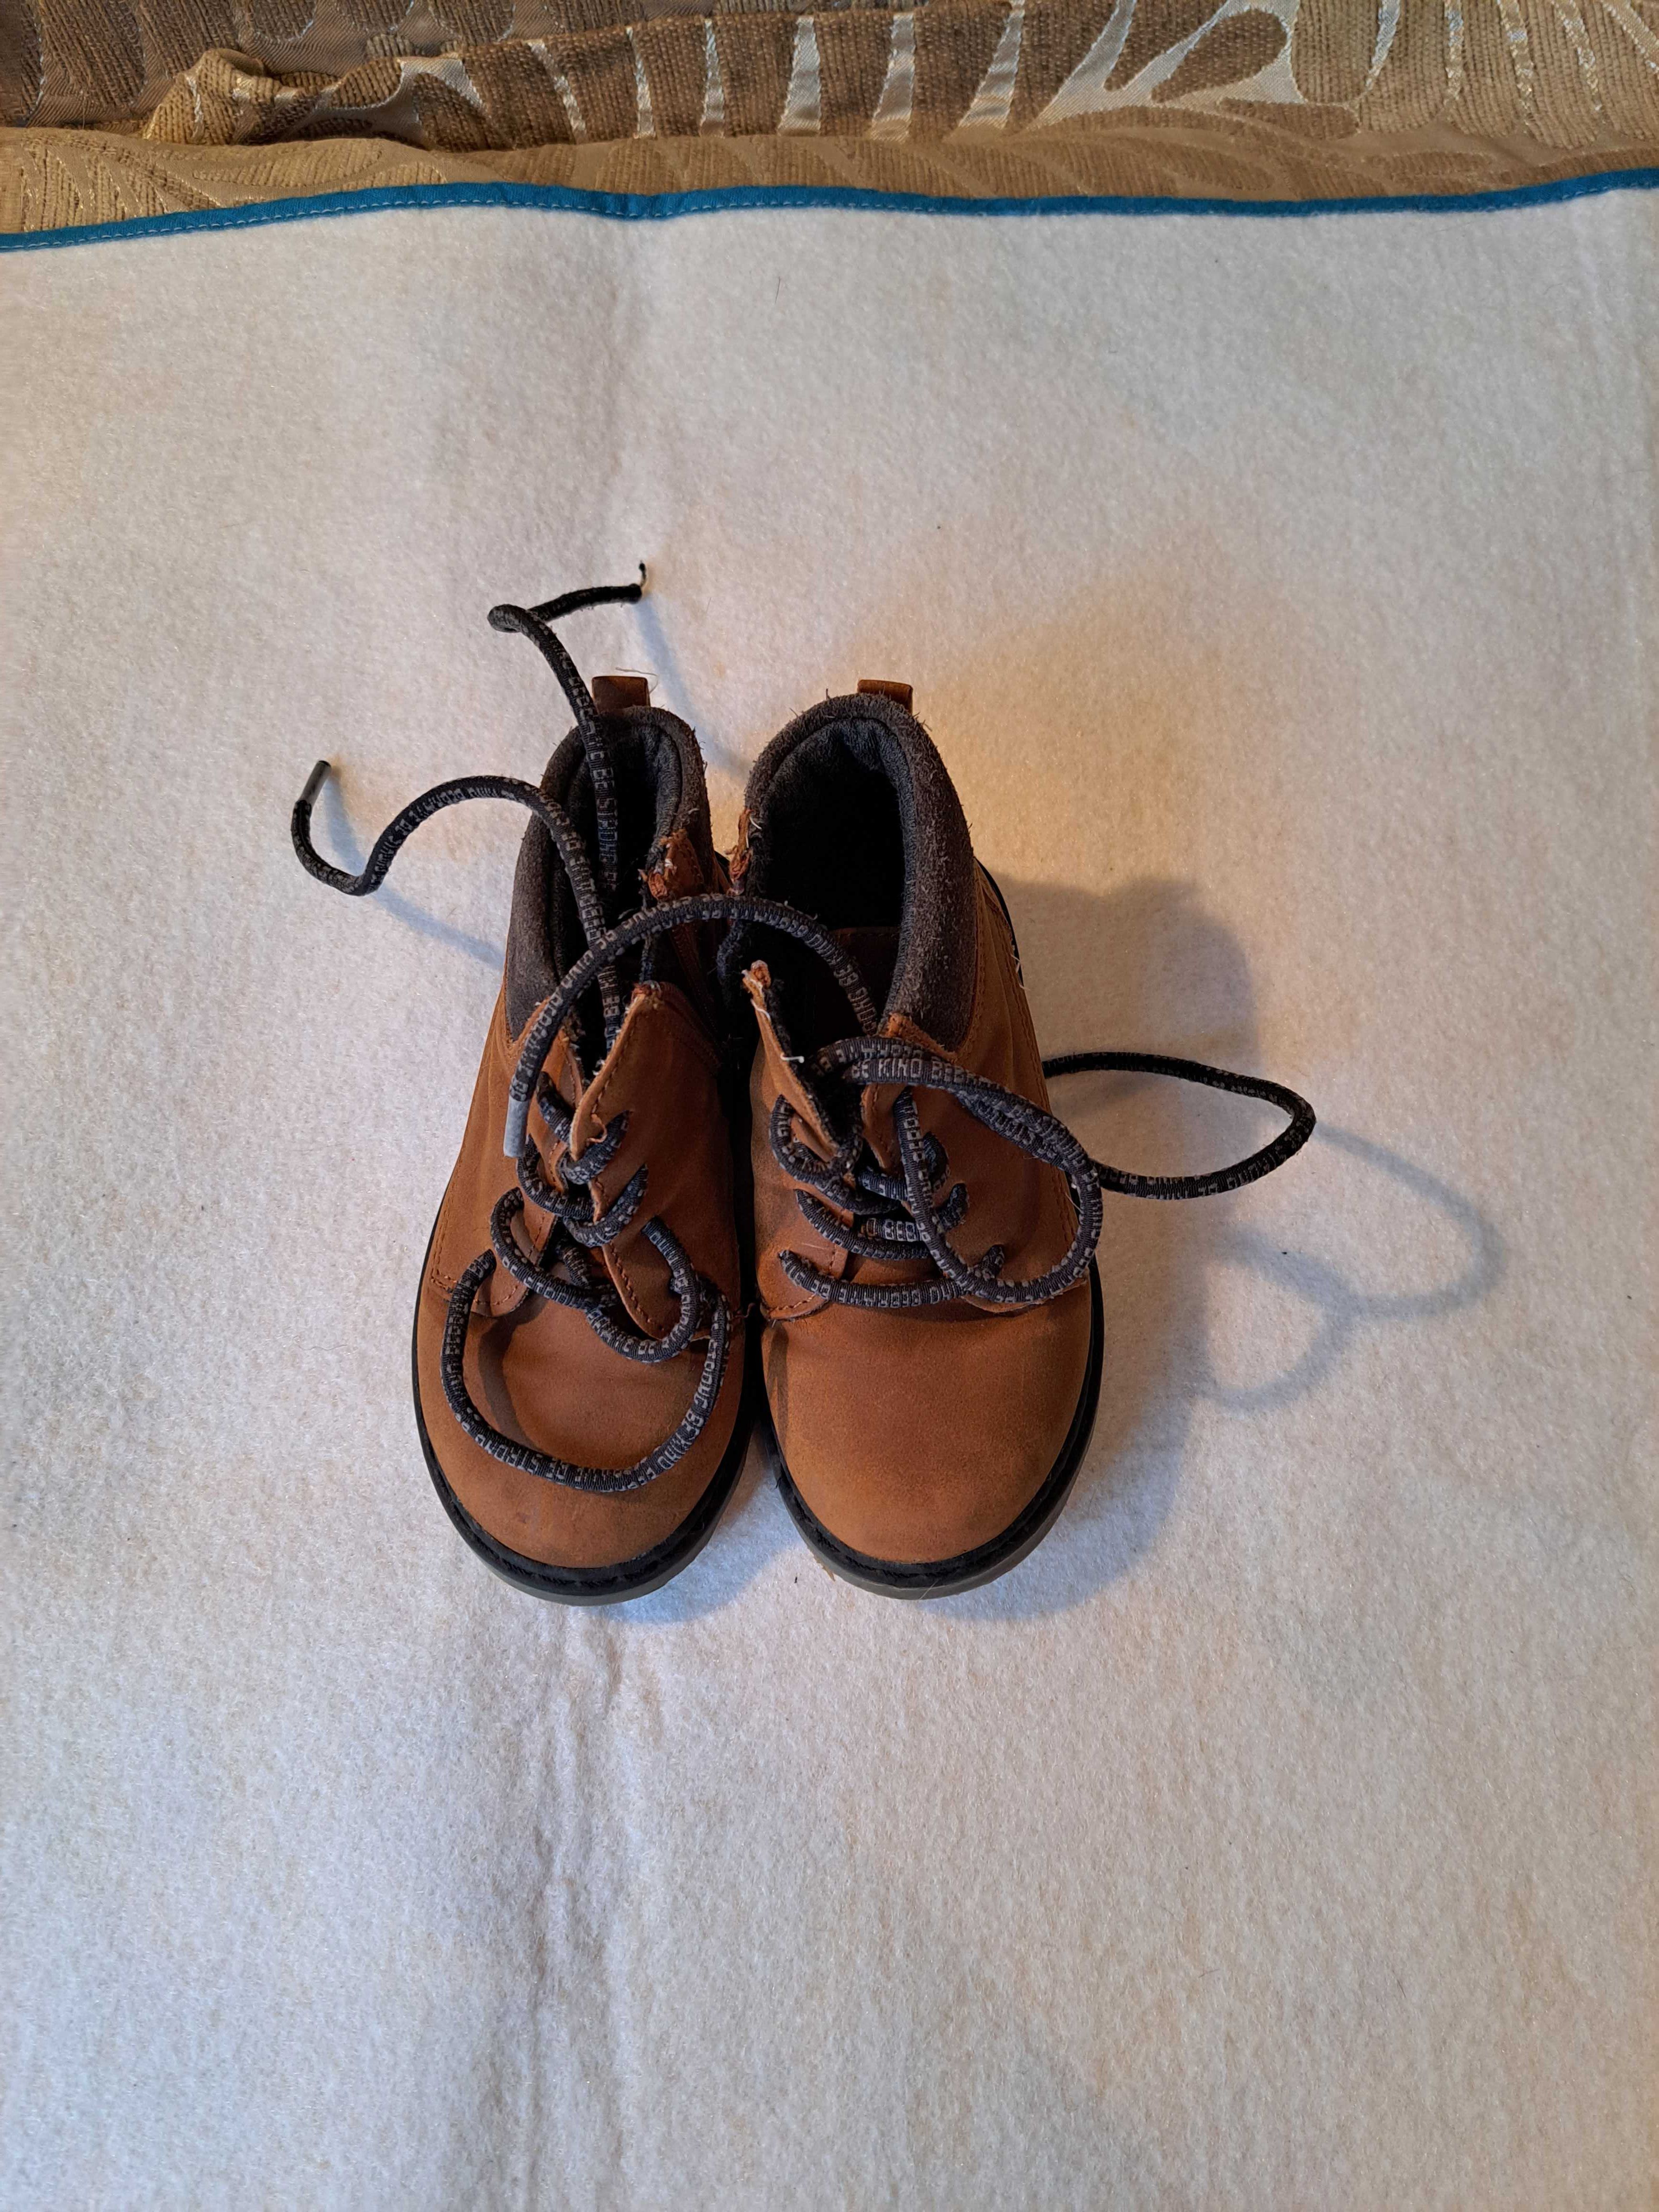 Детская обувь на мальчика до 1 года